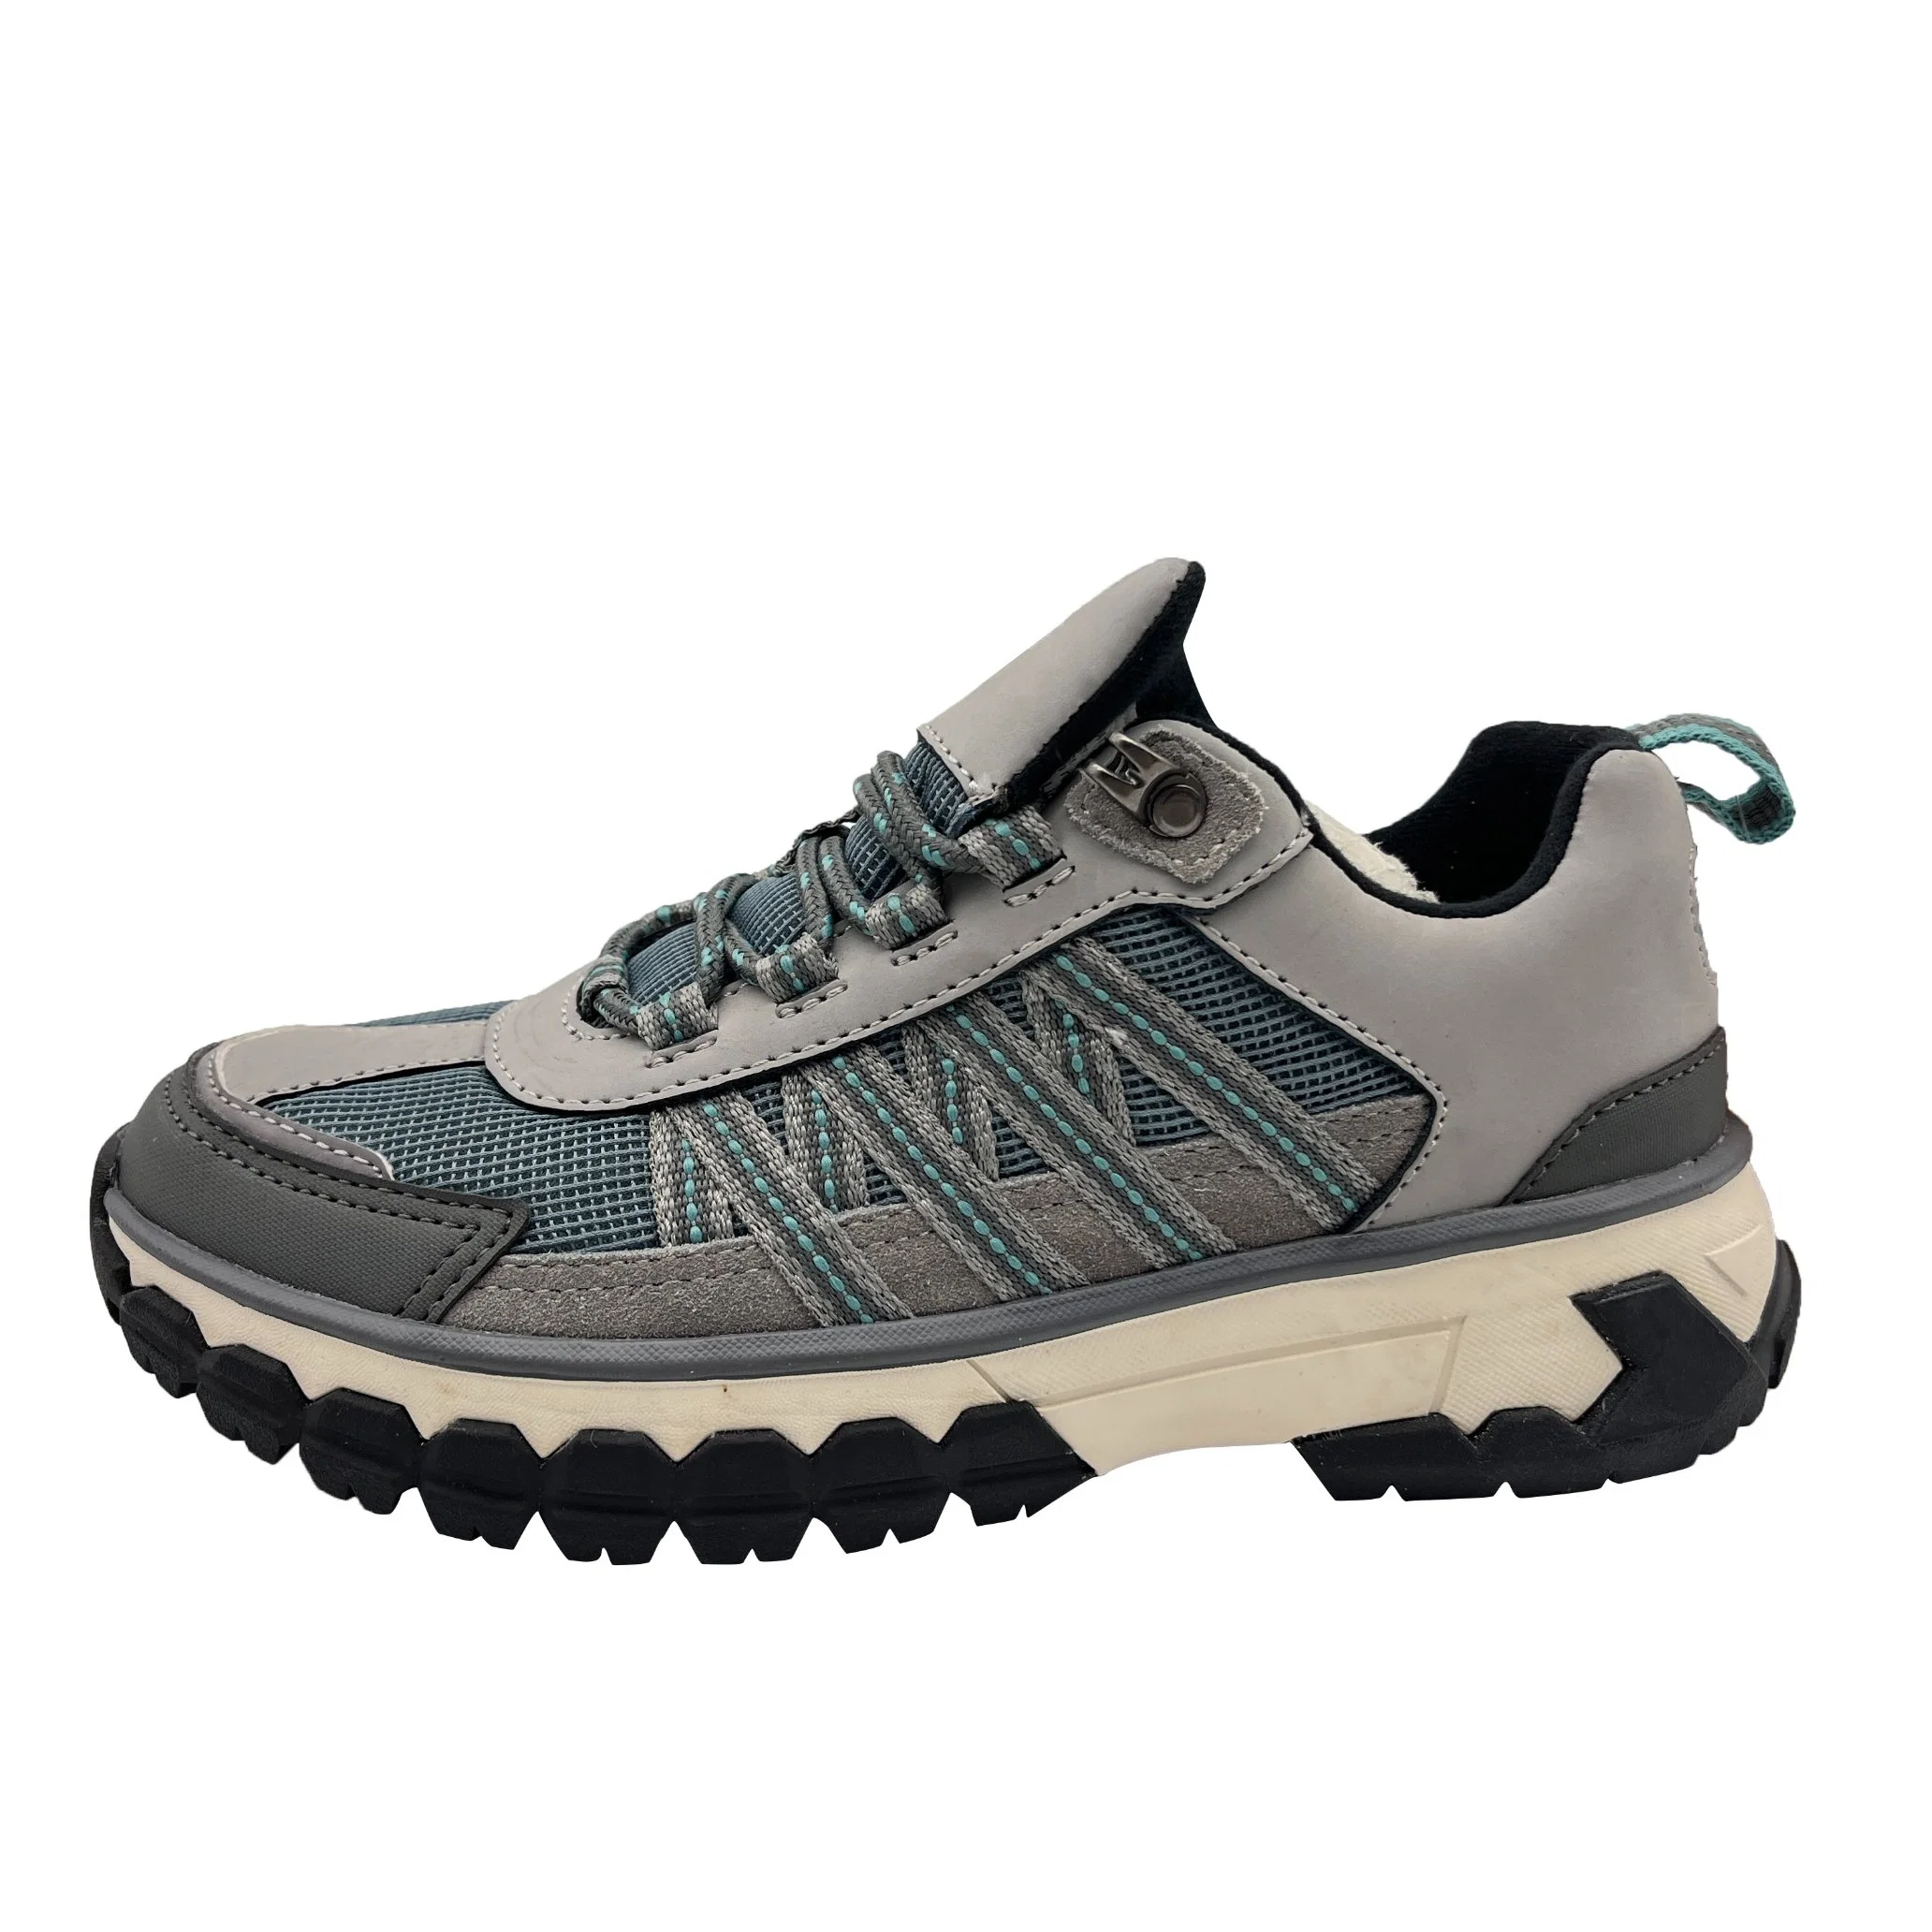 Zapatos de senderismo estilo nuevo para hombres, ideales para actividades al aire libre en invierno, con aislamiento de algodón y suela antideslizante para escalar deportes.